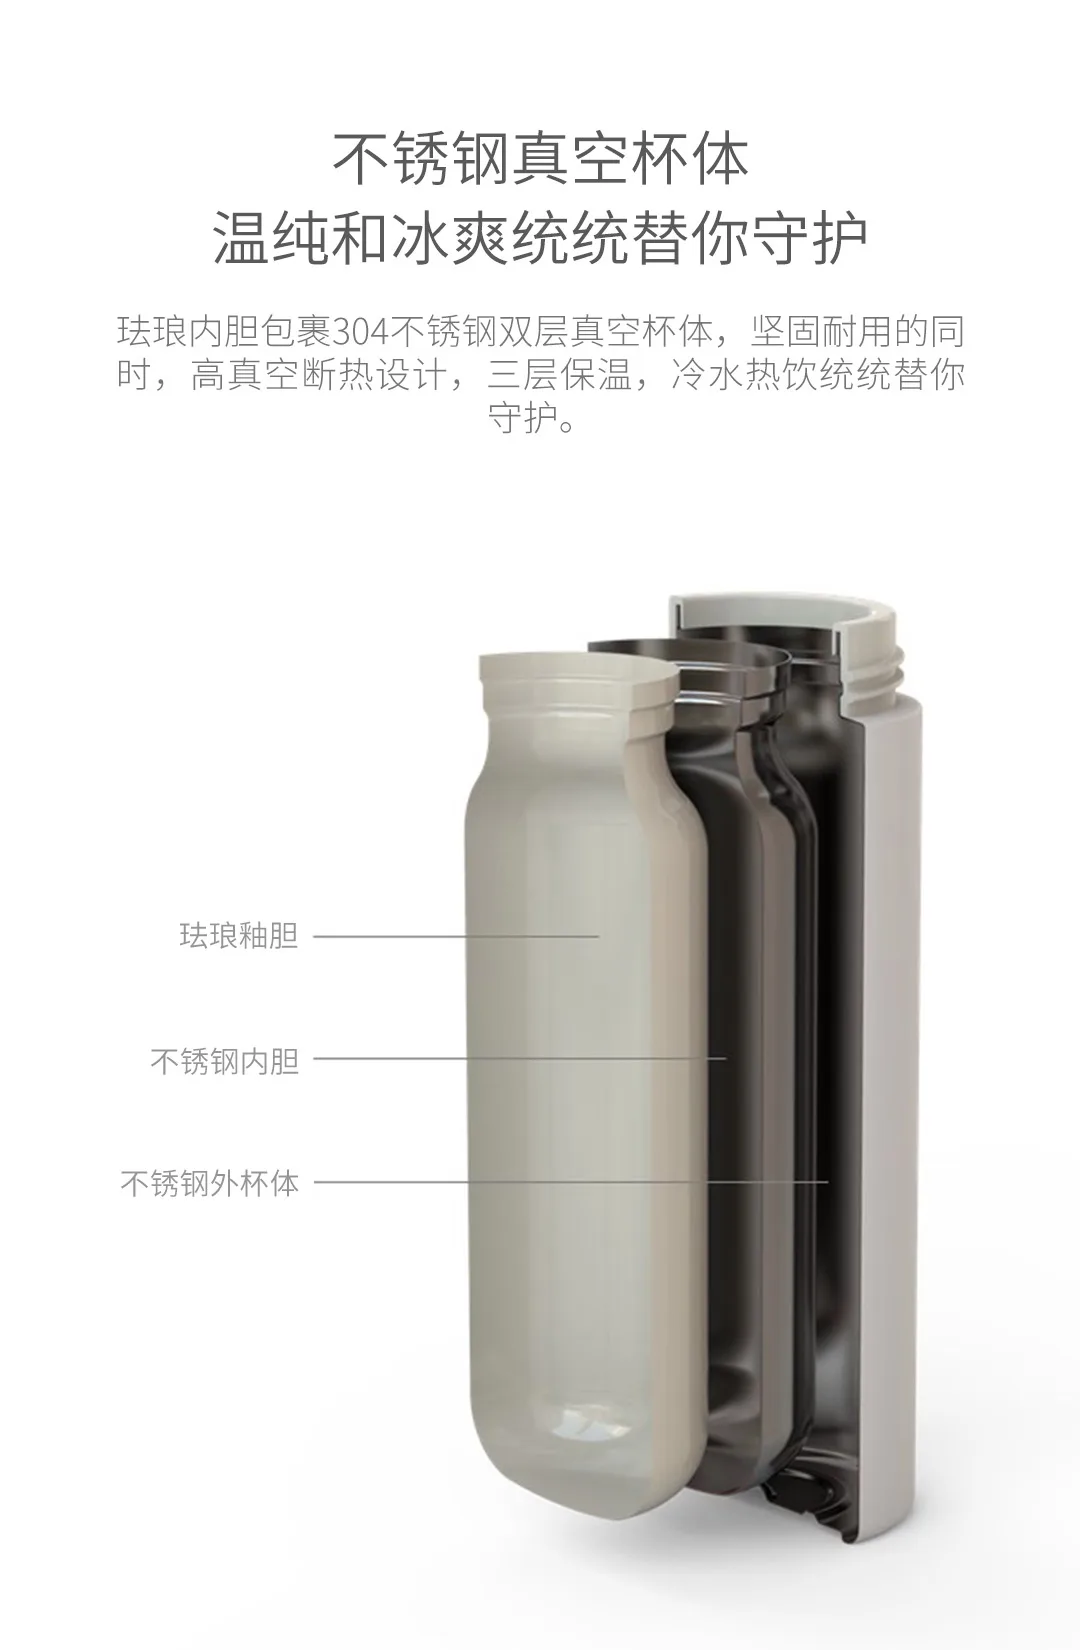 Предпродажная Xiaomi 17PIN теплая Звездная чашка с цифровым дисплеем температуры эмалированная глазурь долговечная изоляция 380 мл термос чашка